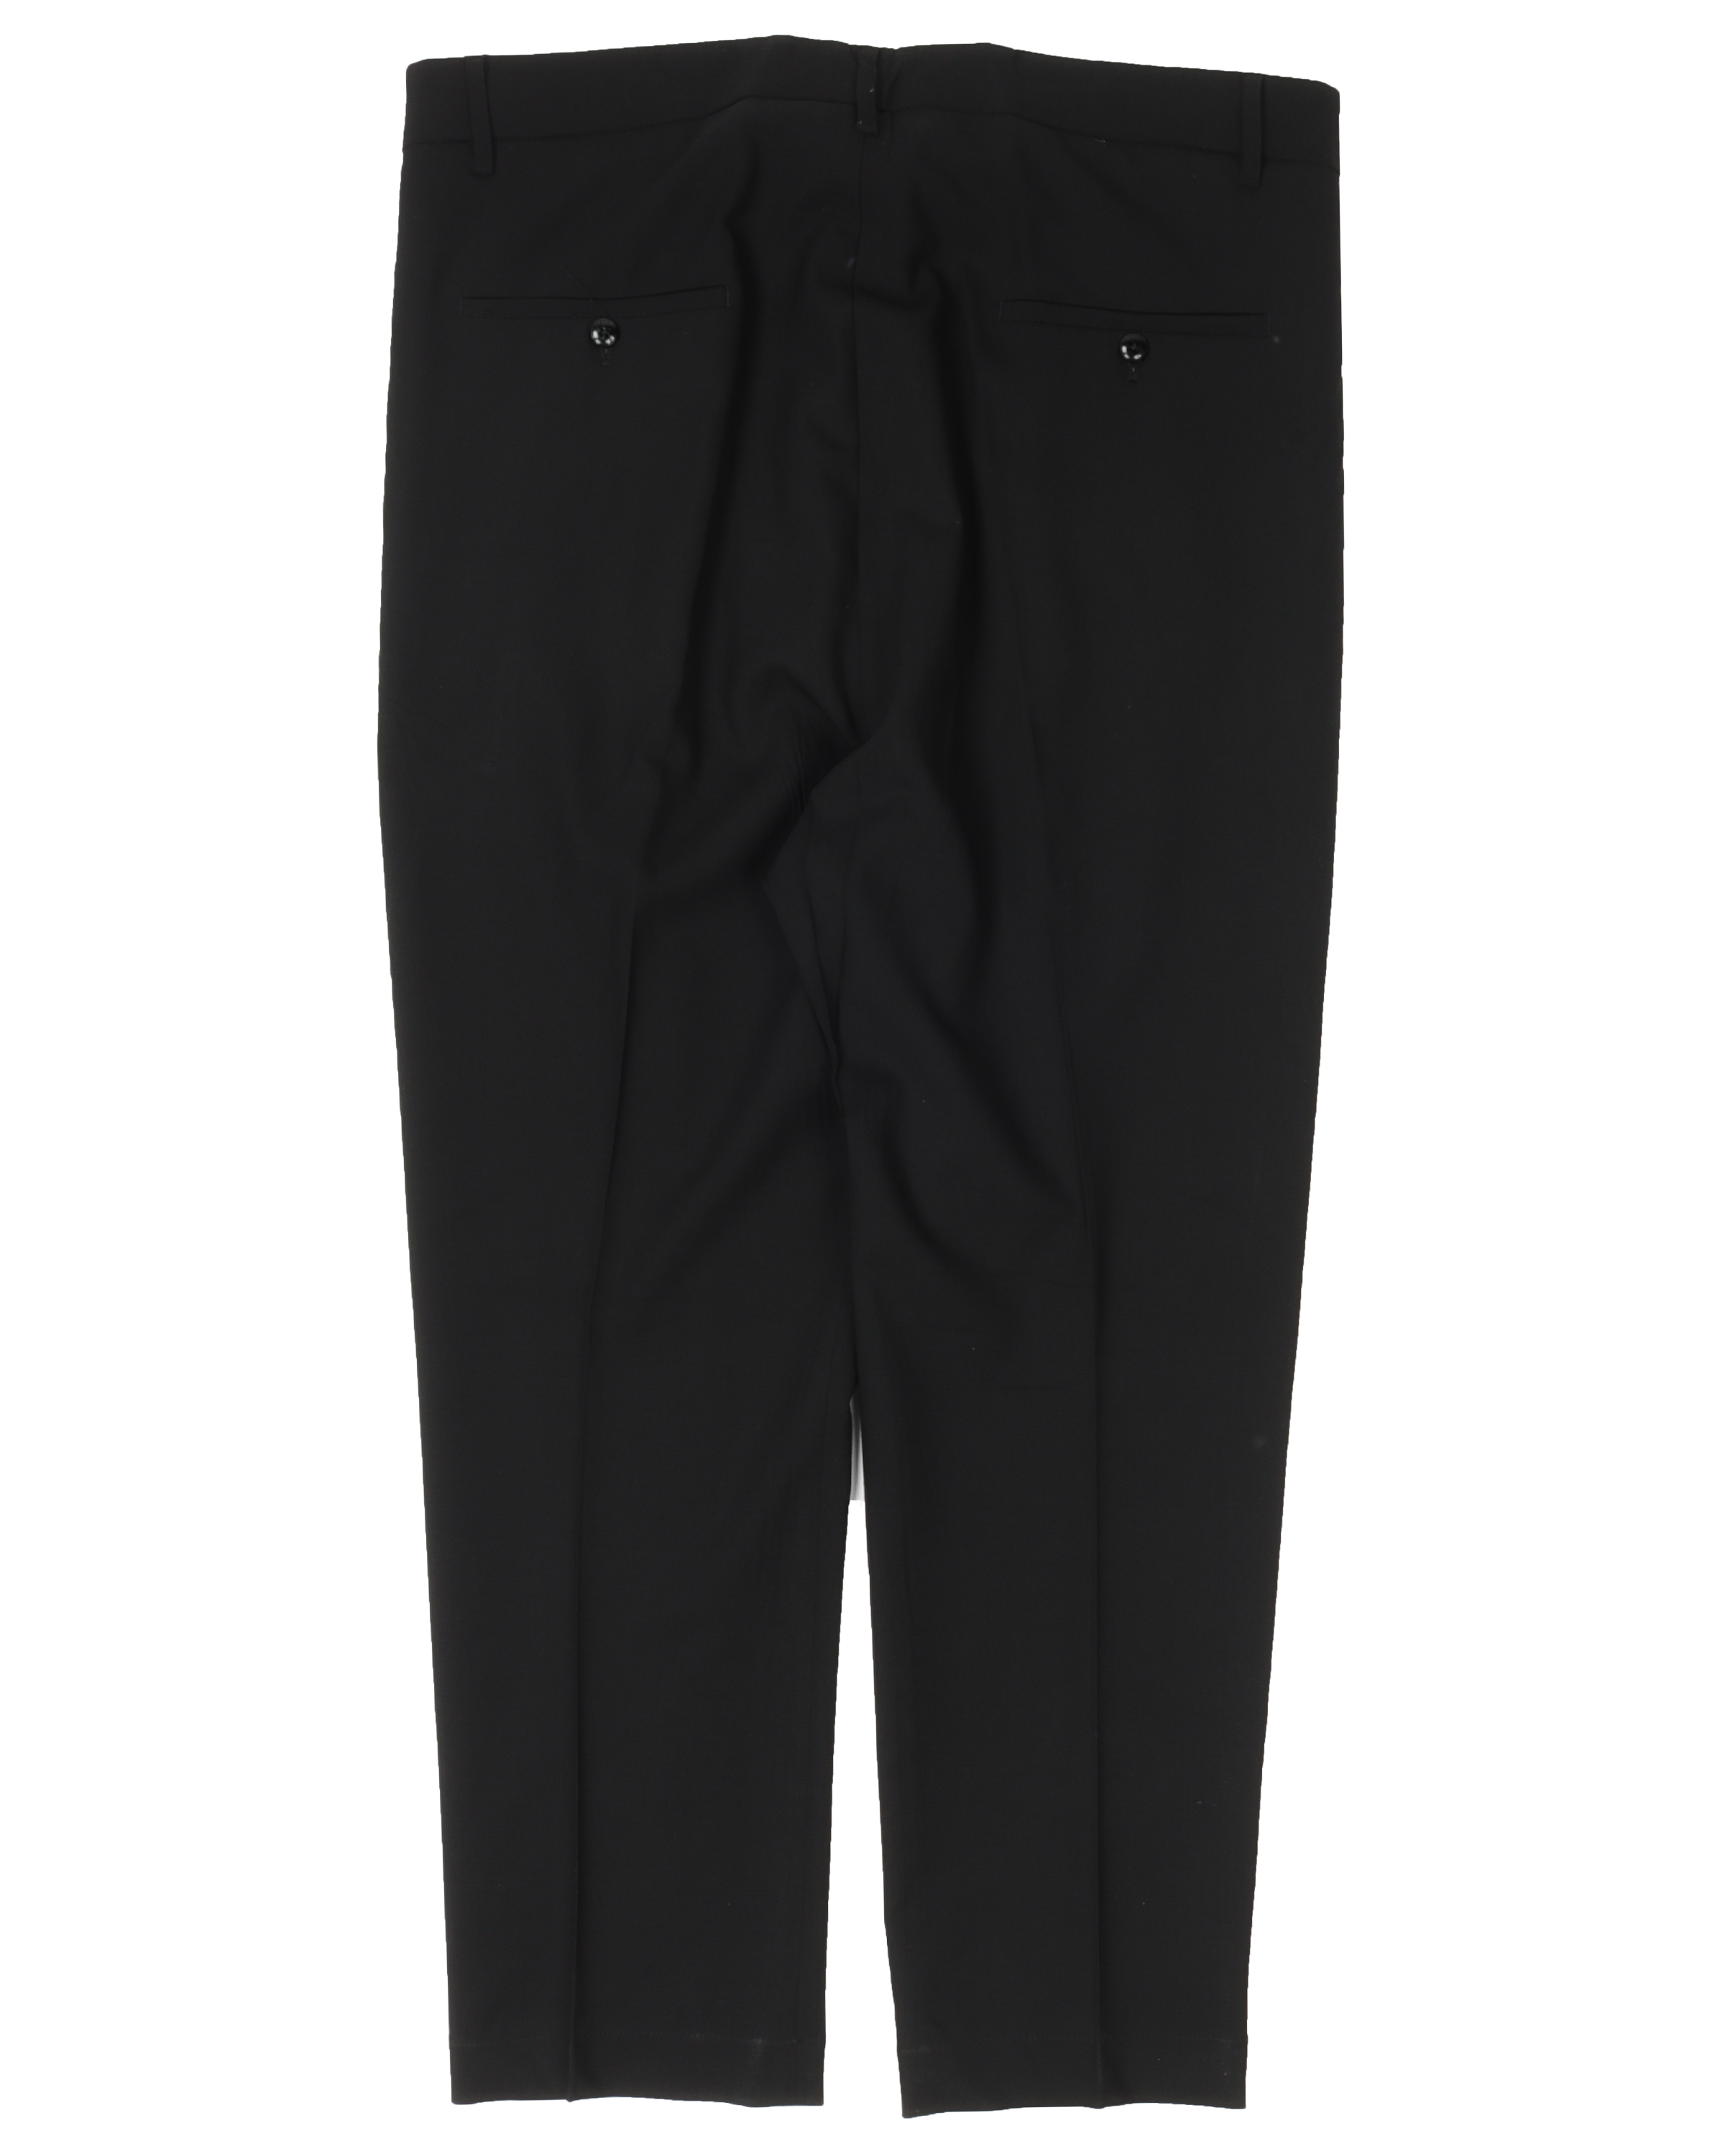 FW14 "MOODY" Wool Suit Pants